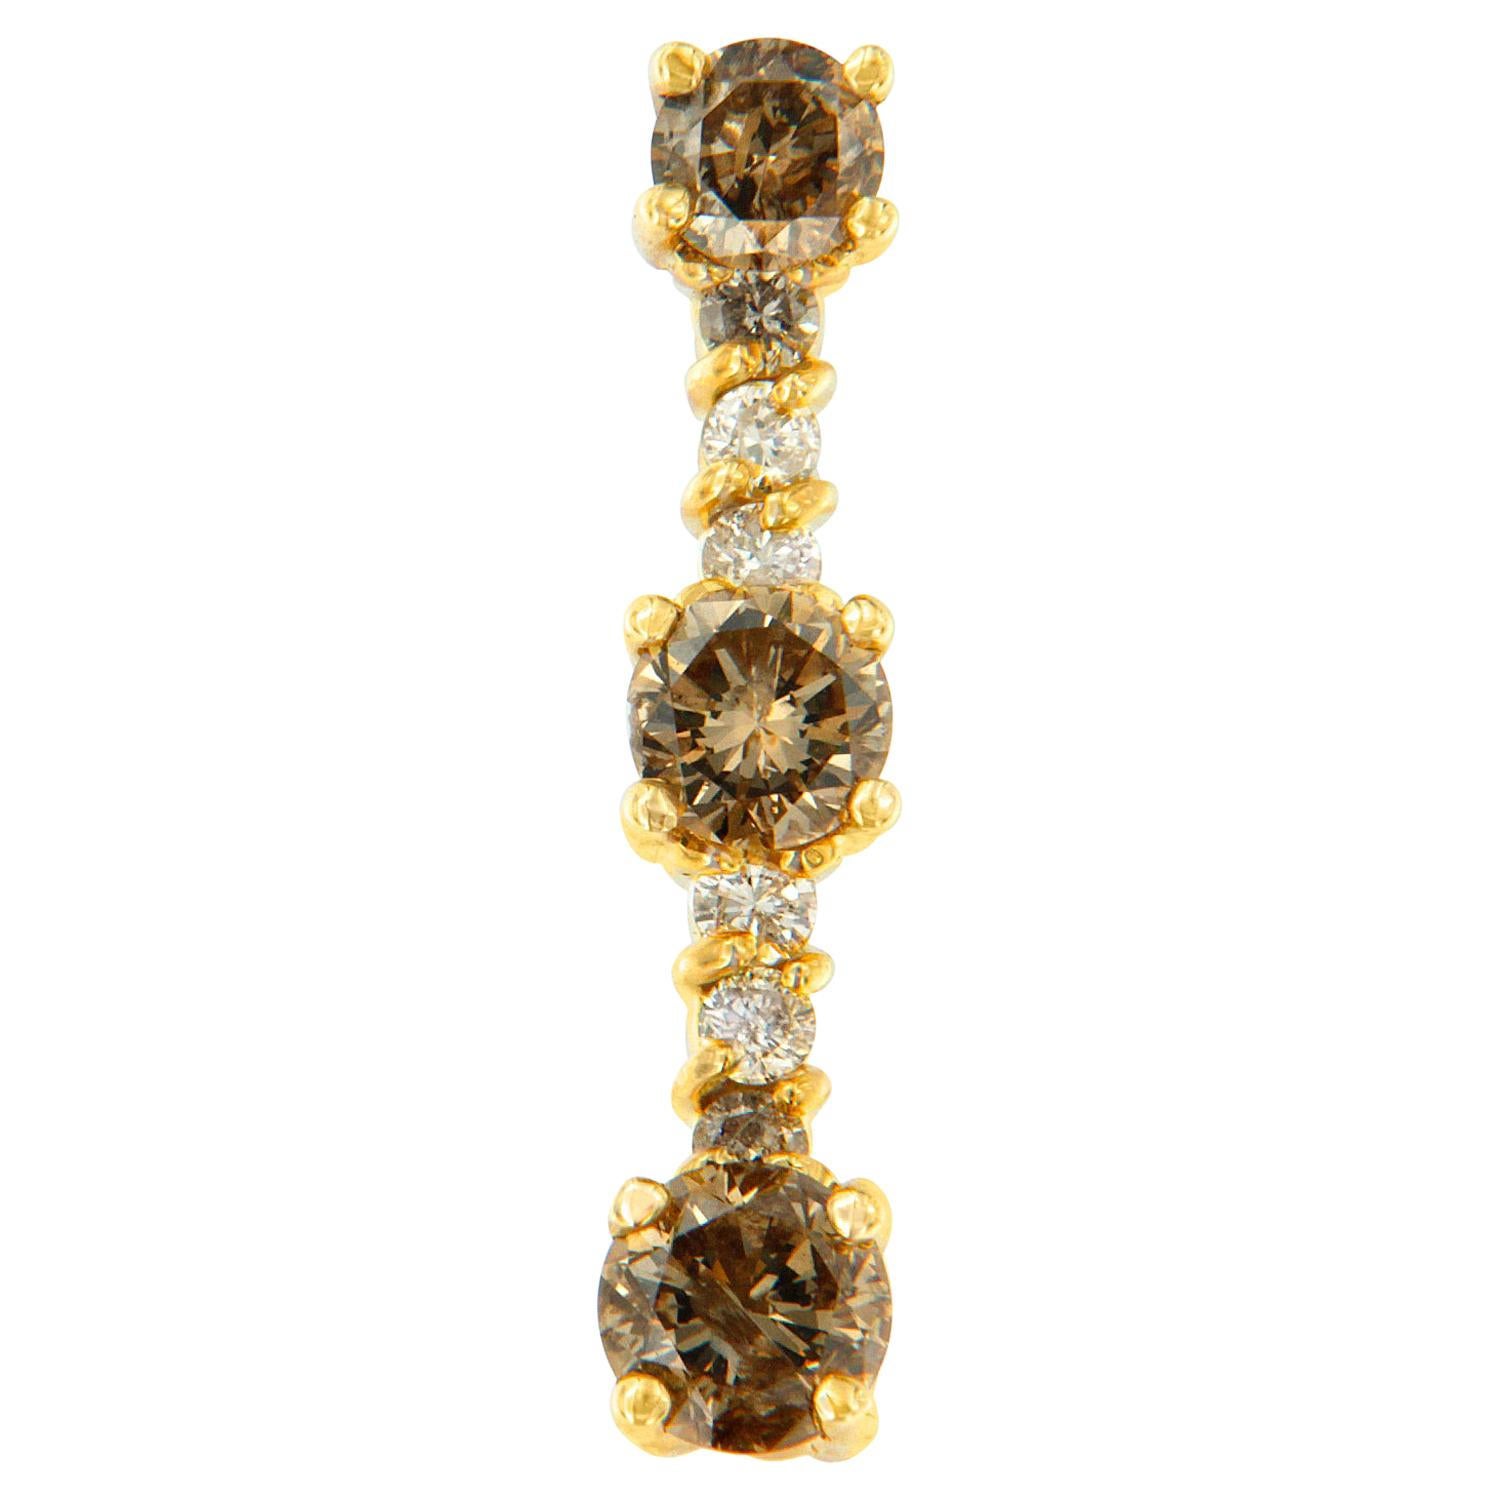 Collier pendentif en or jaune 14 carats avec diamants blancs et champagne de 1,0 carat